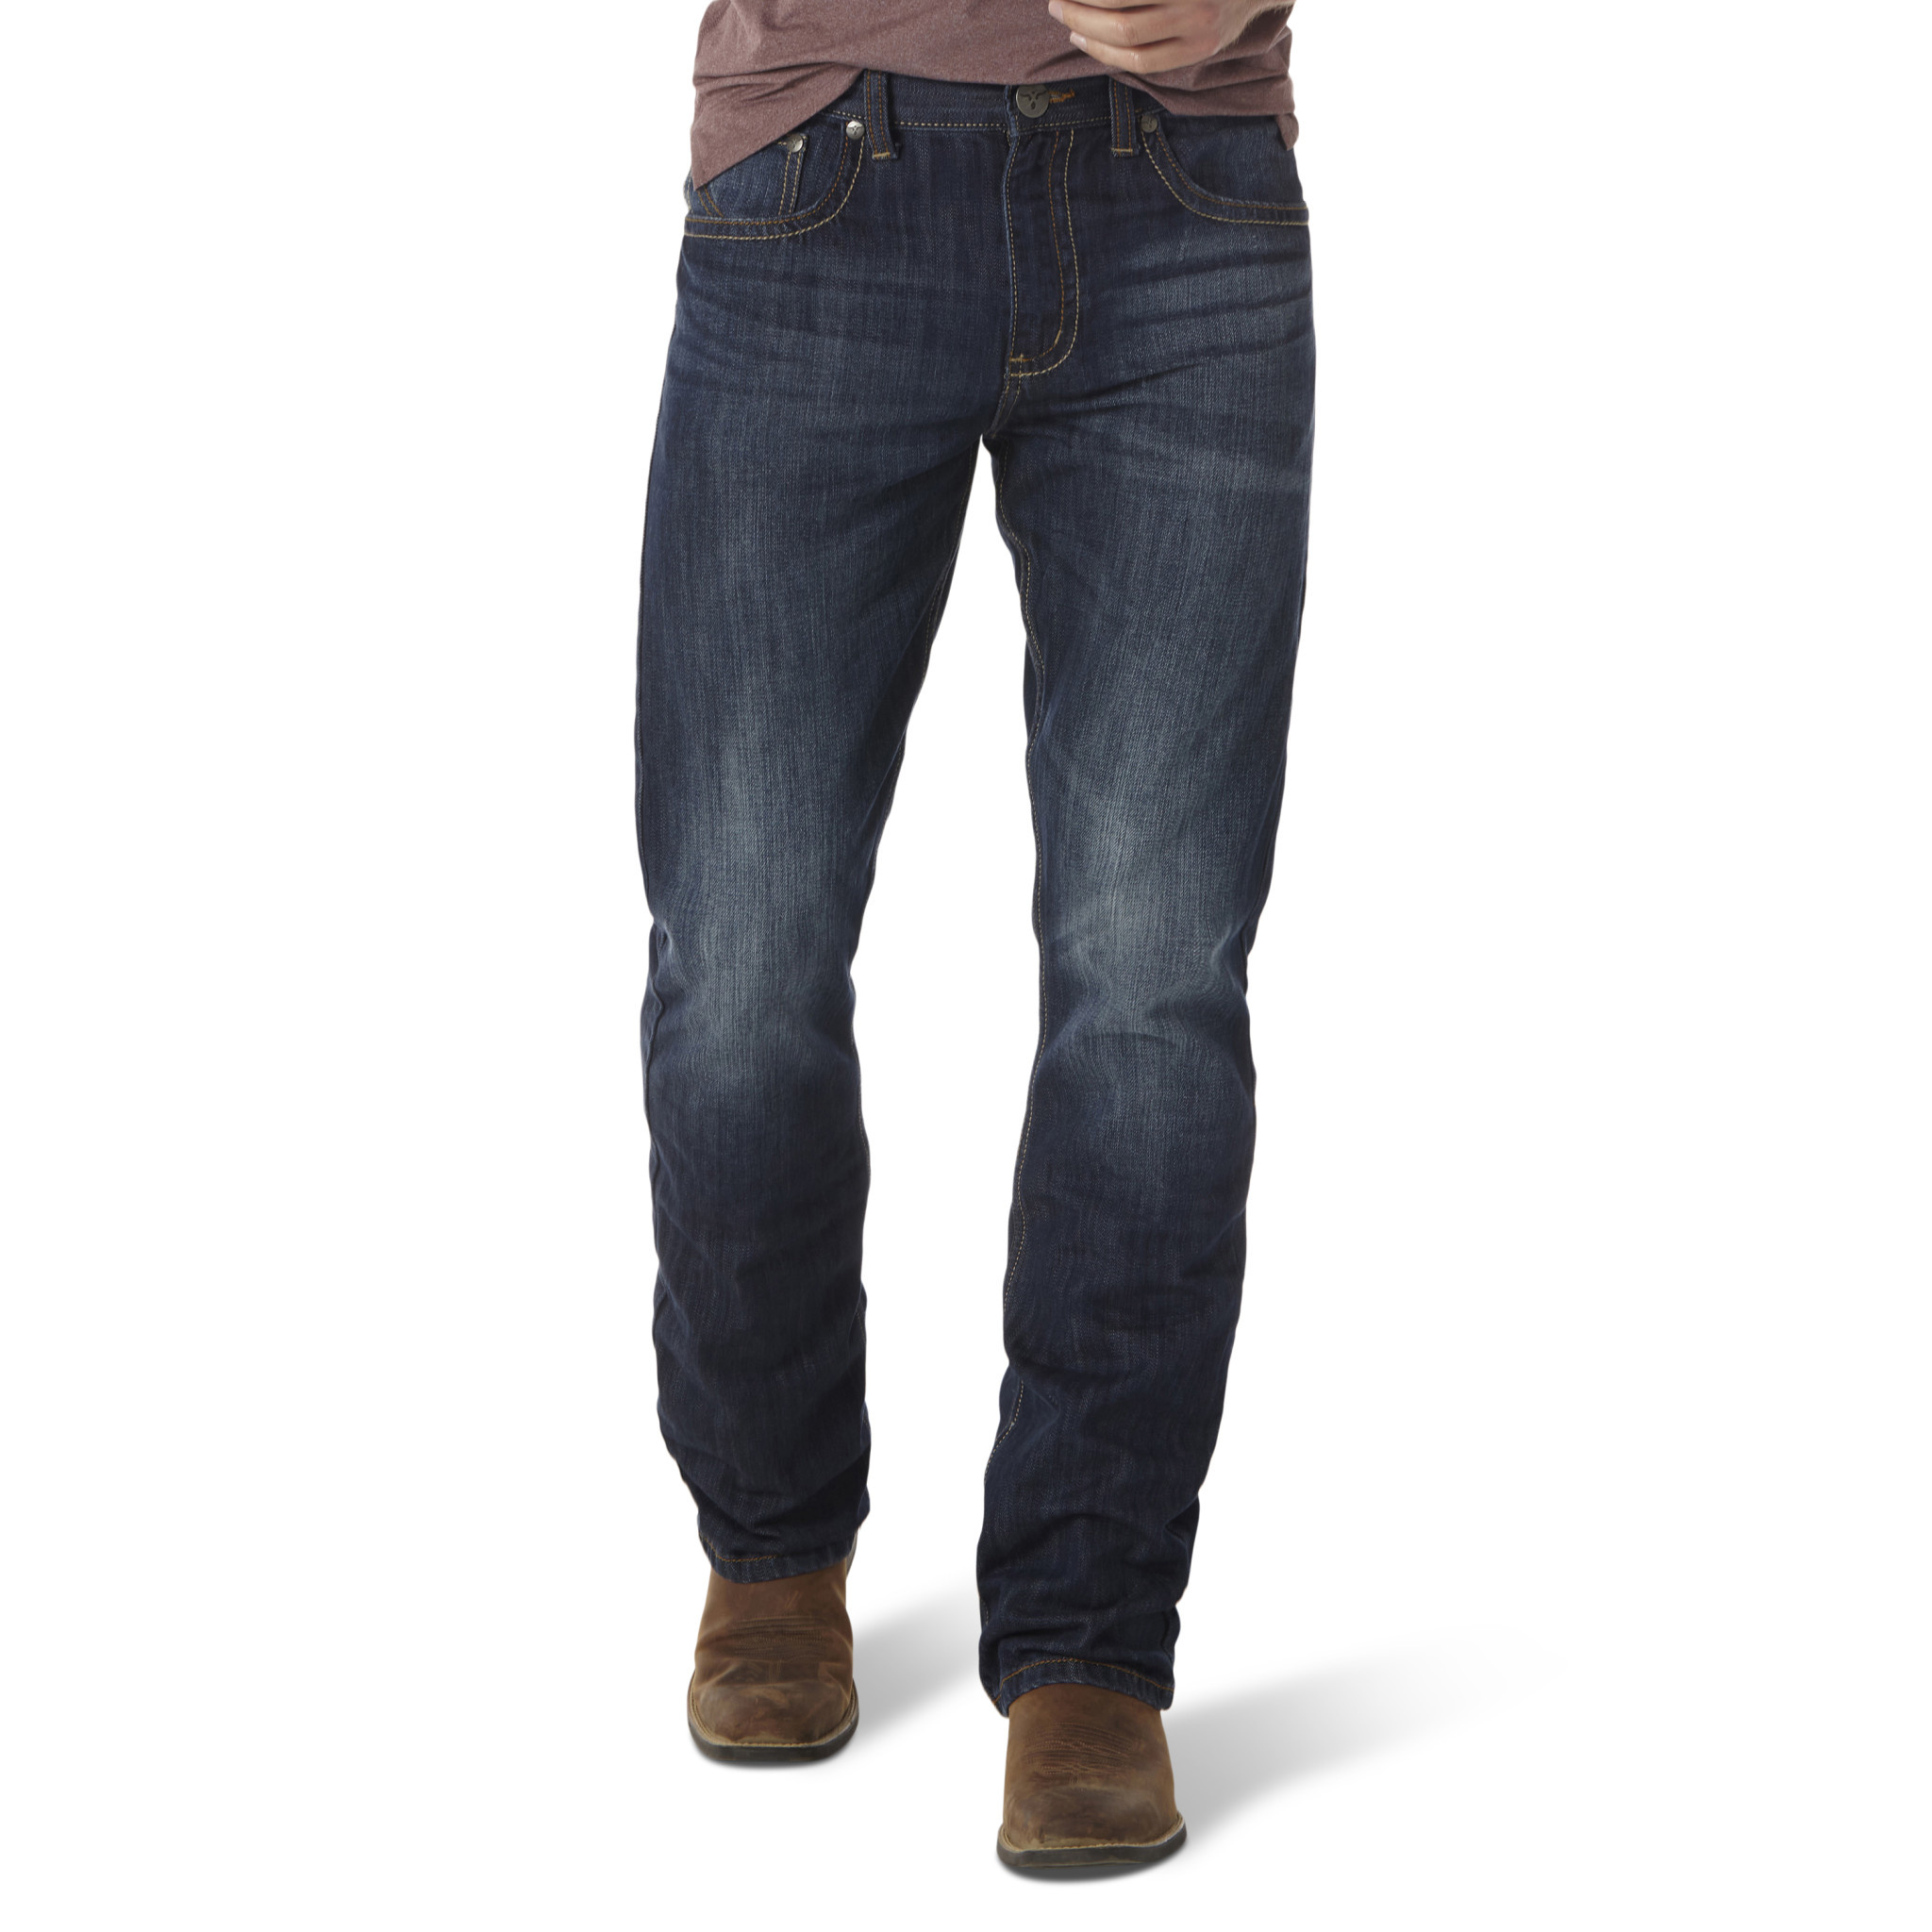 Wranlger Cowboy Cut Original Fit 13MWZ Rigid Jeans - Frontier